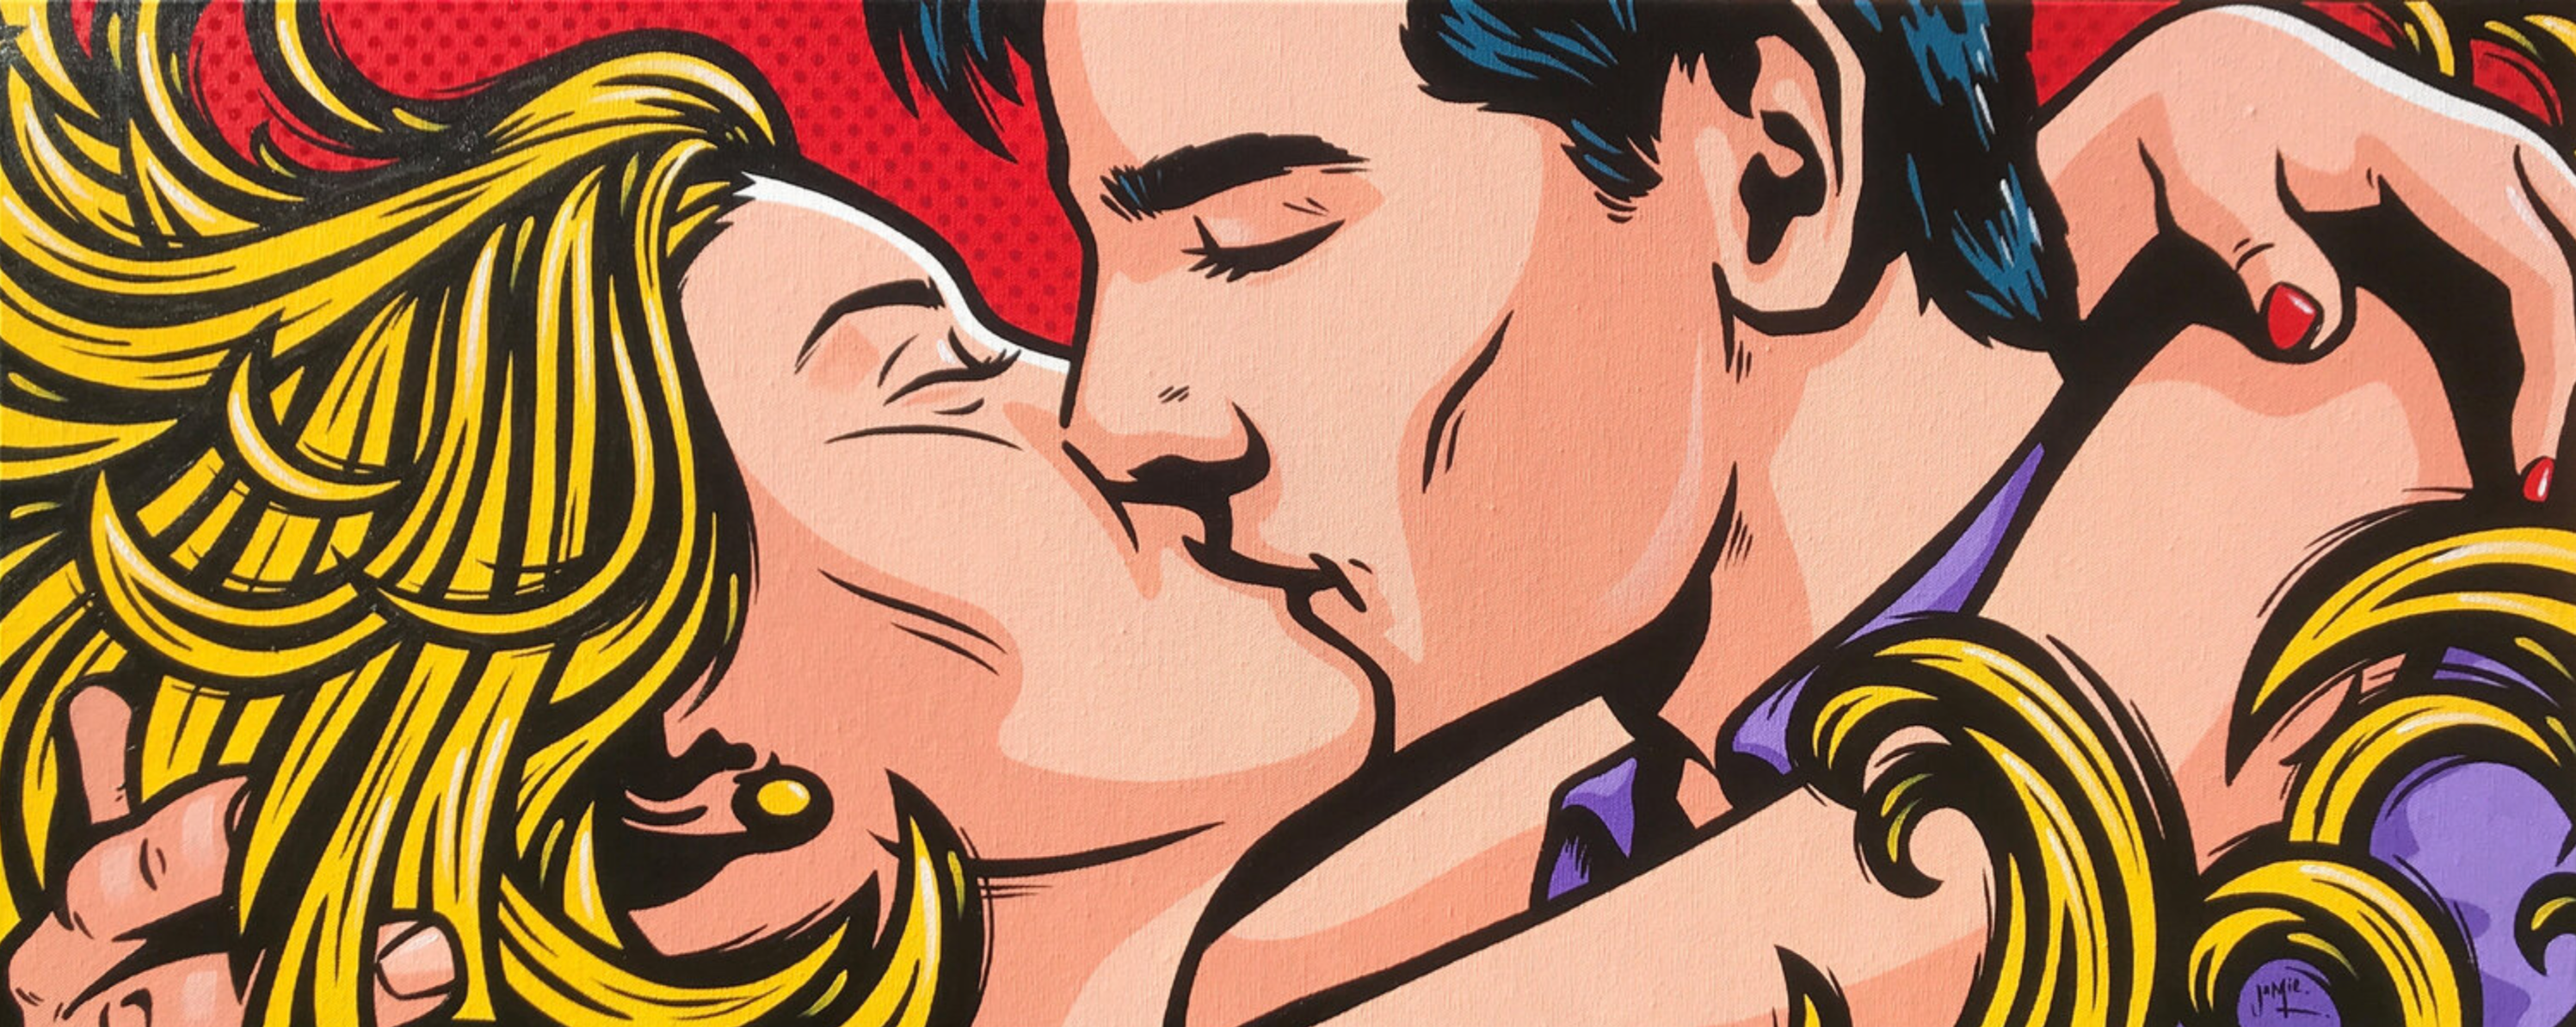 Peinture pop art de Jamie Lee "Jung Love" de style bande dessinée avec un design original d'un jeune couple se tenant dans une étreinte et un baiser passionnés. Les cheveux blonds de la femme l'enveloppent comme des flammes de passion.